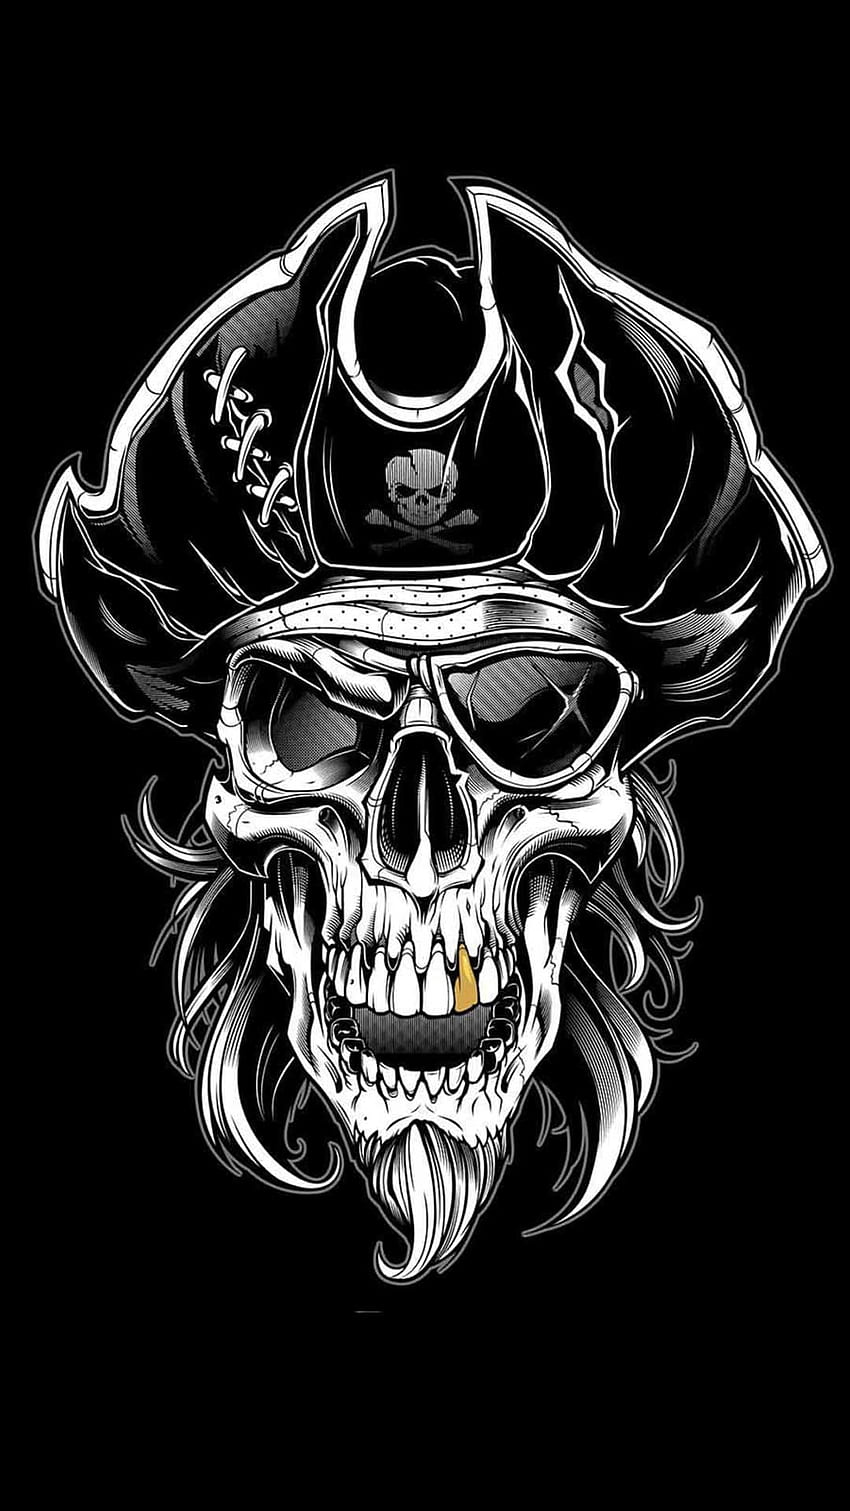 Tengkorak Bajak Laut, Tengkorak Jack Sparrow wallpaper ponsel HD